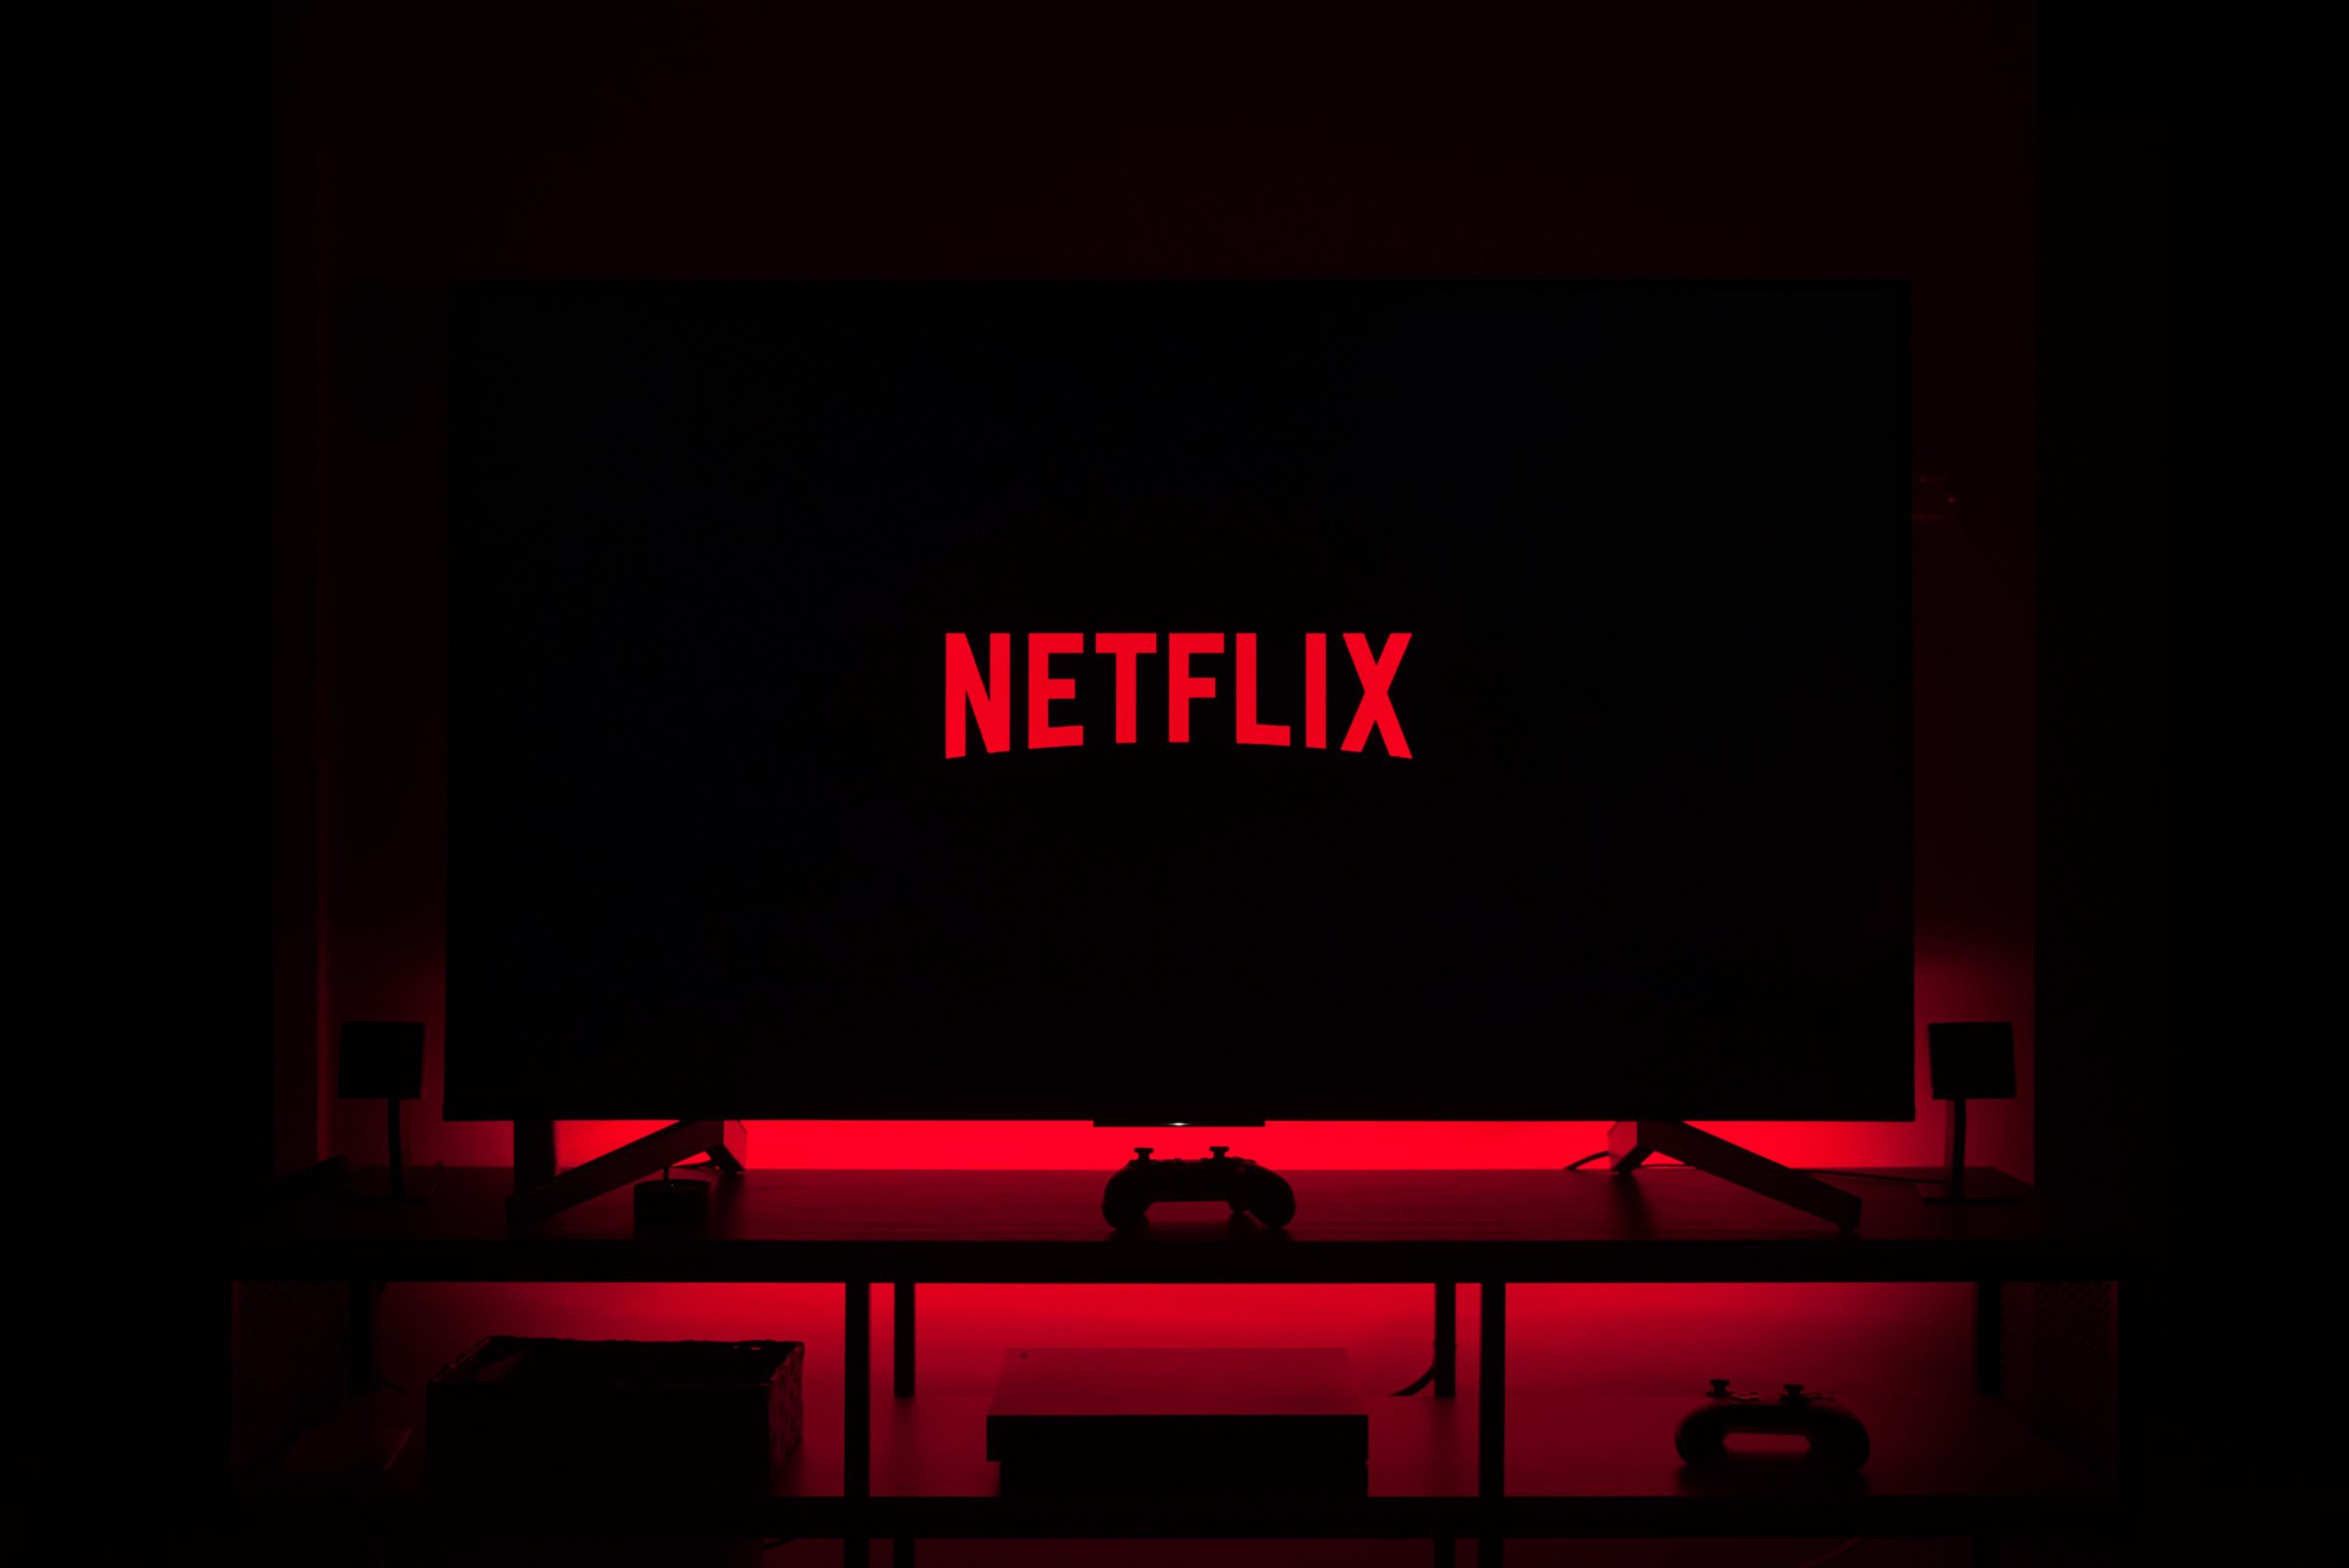 Les films et séries qui arrivent sur Netflix en janvier 2021